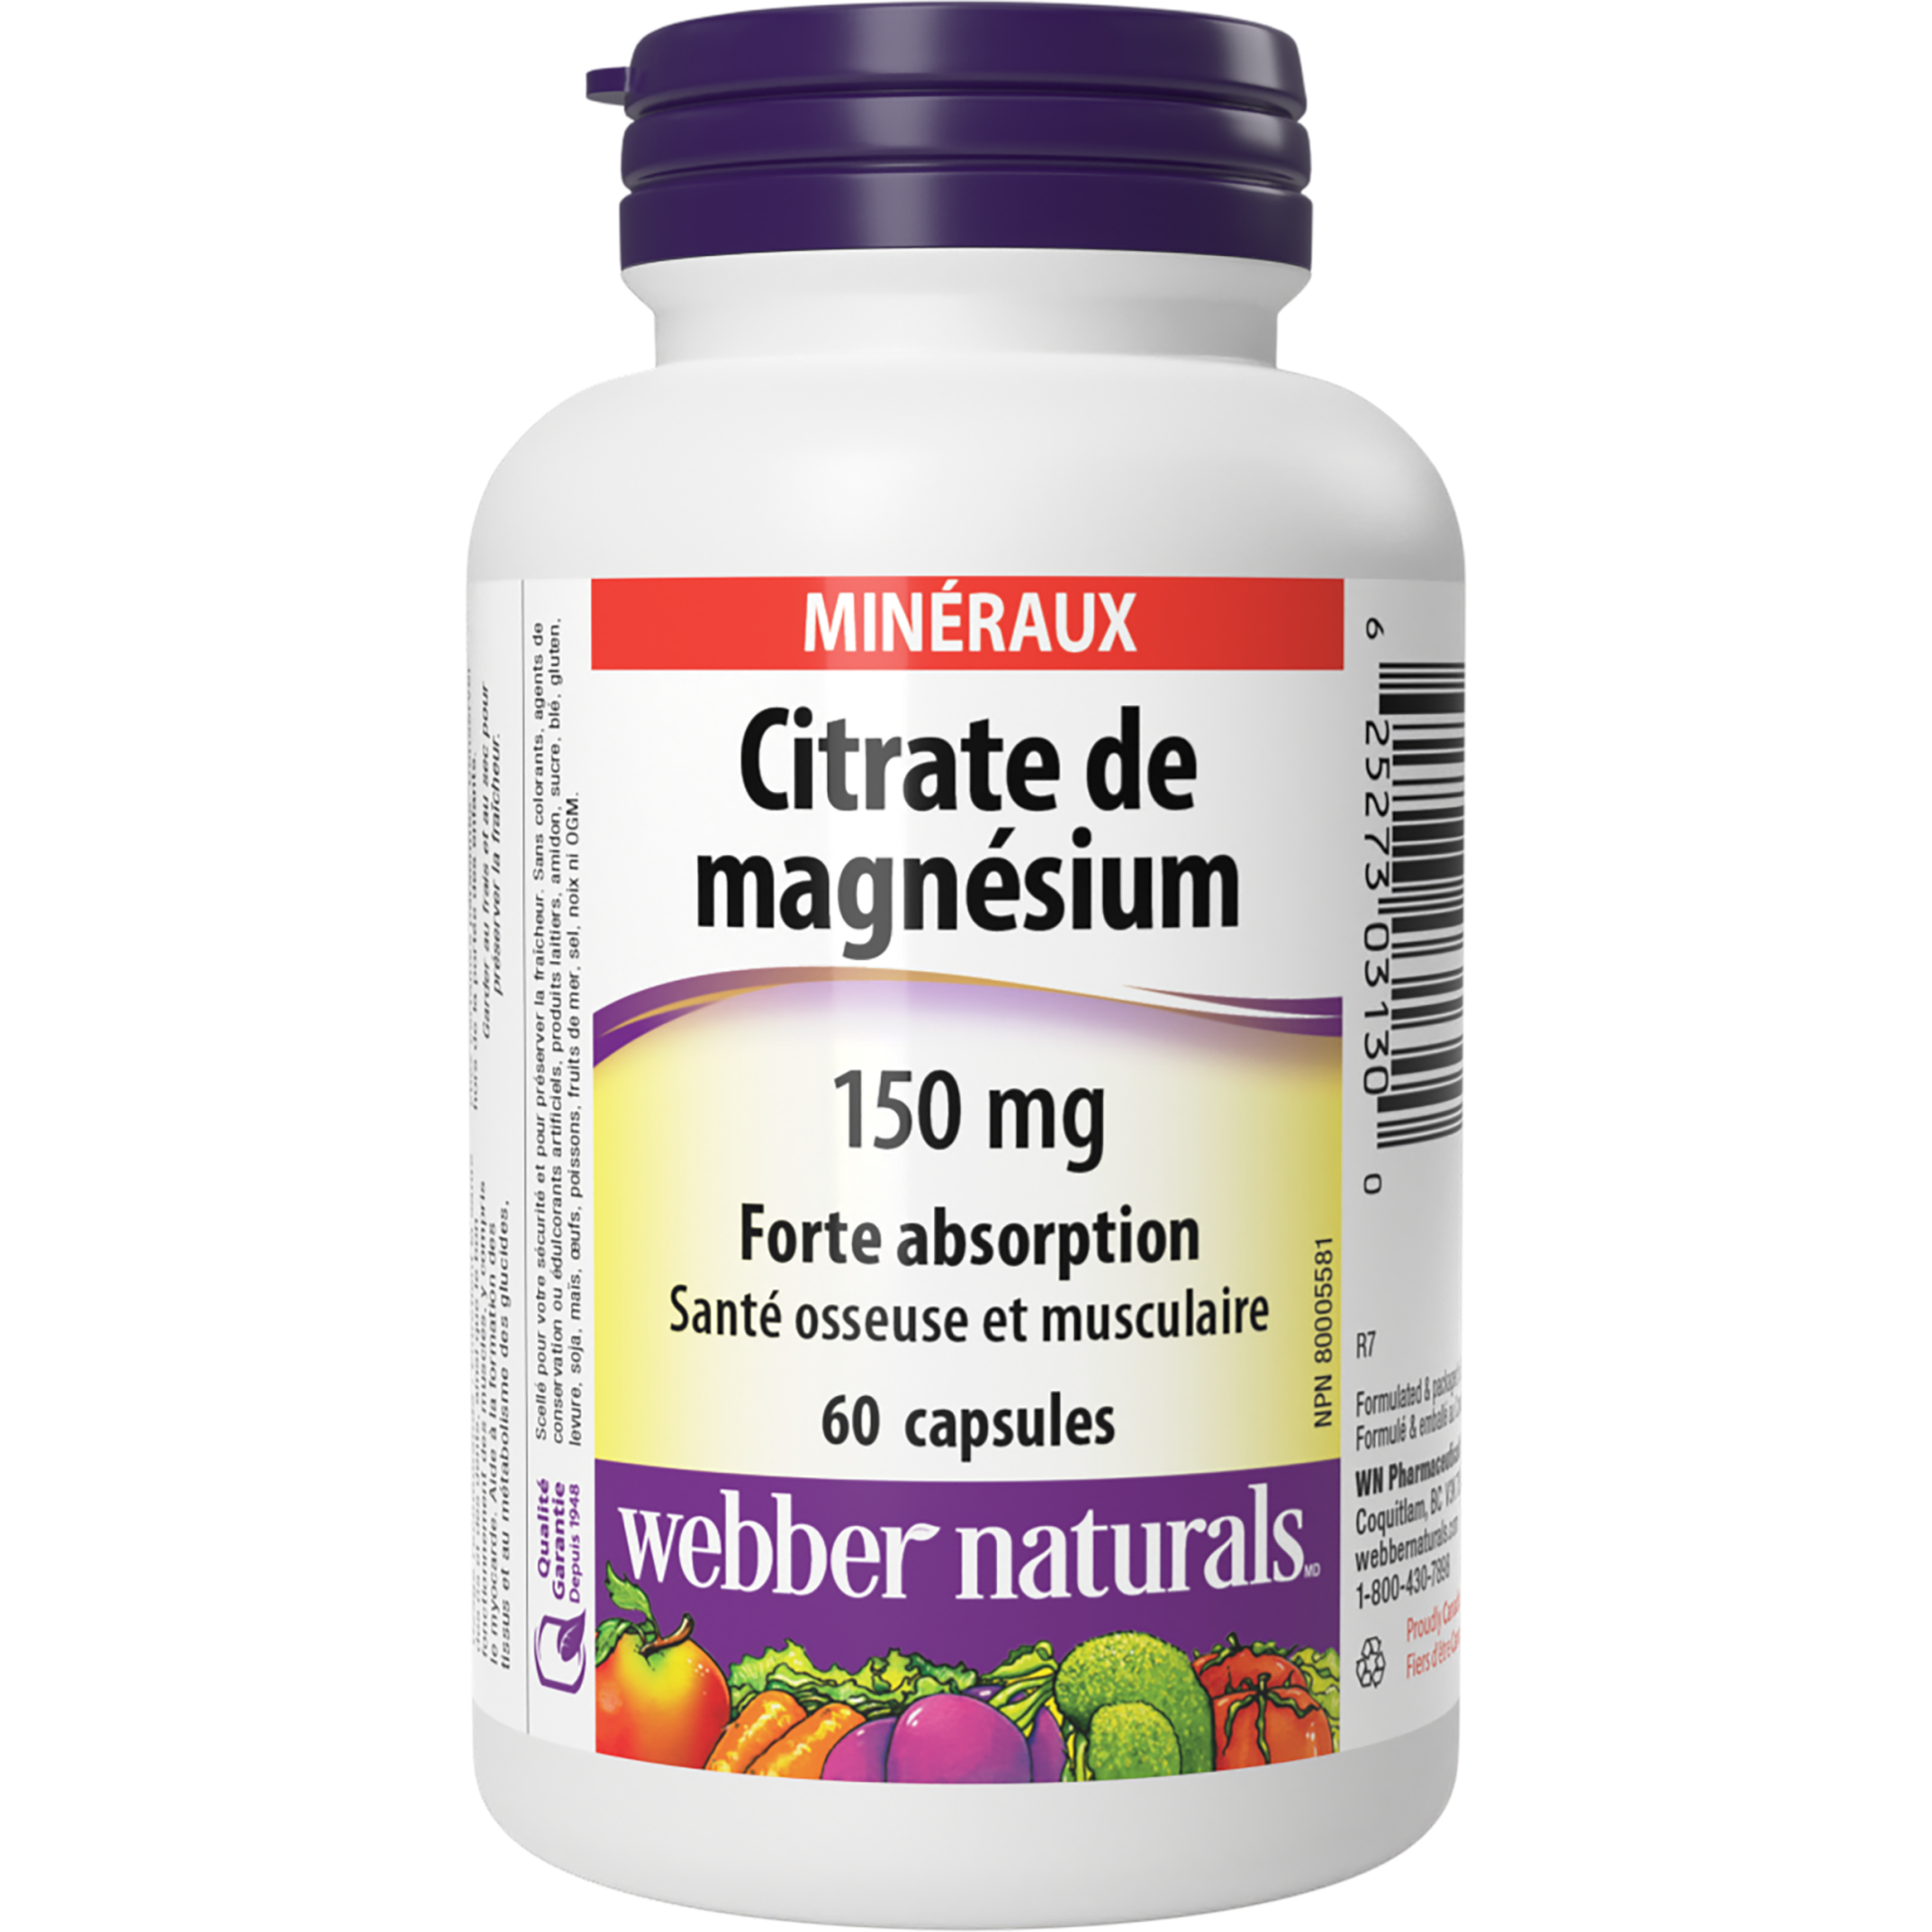 Citrate de magnésium Forte absorption 150 mg for Webber Naturals|v|hi-res|WN3130